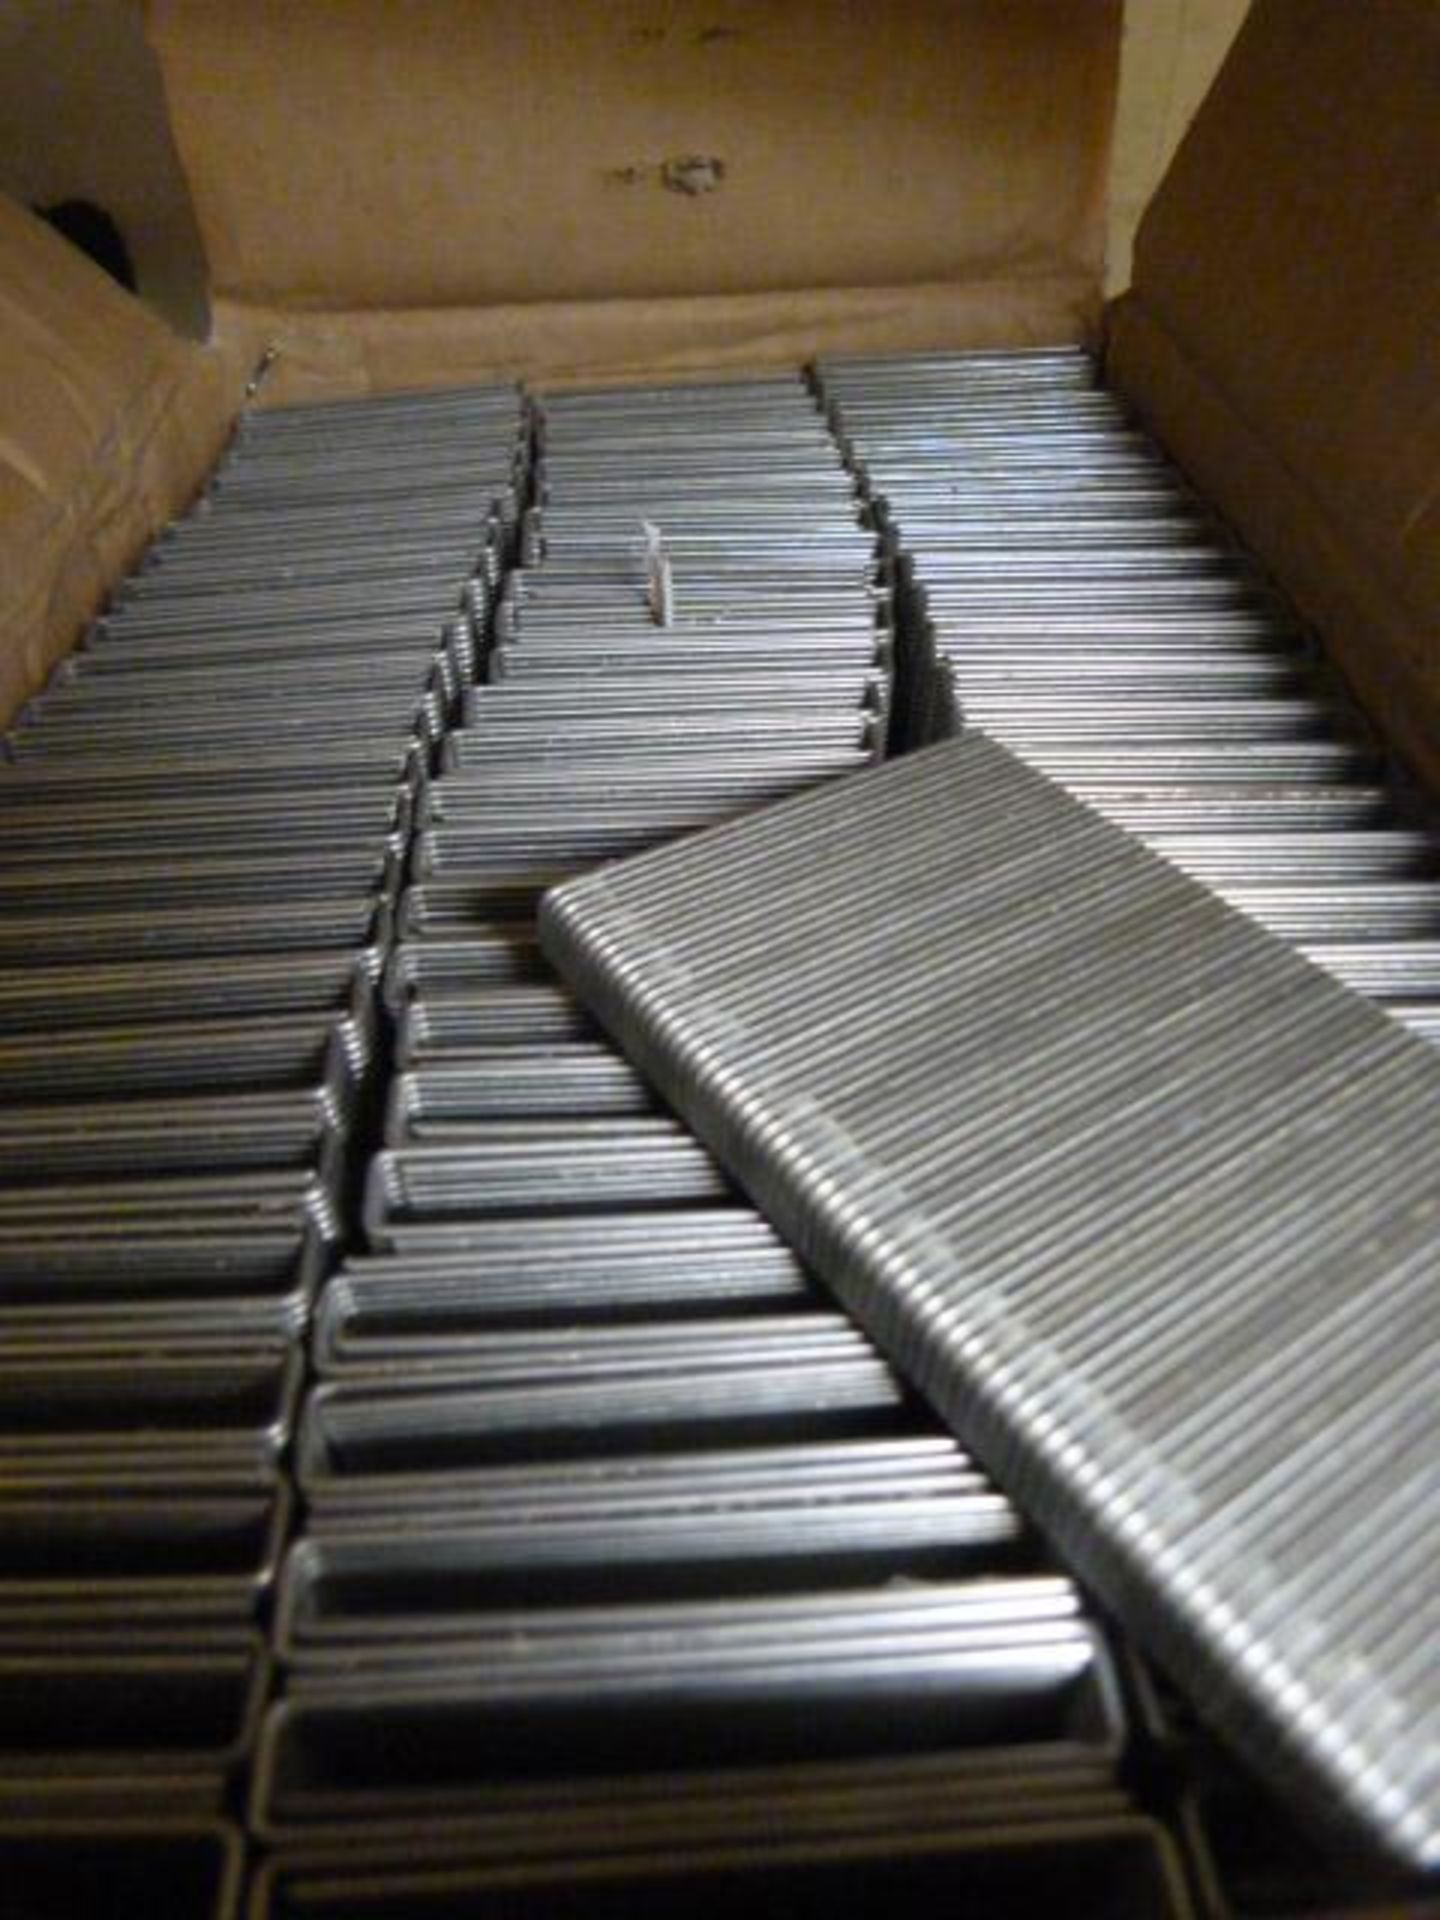 Box of N64 Industrial Staples